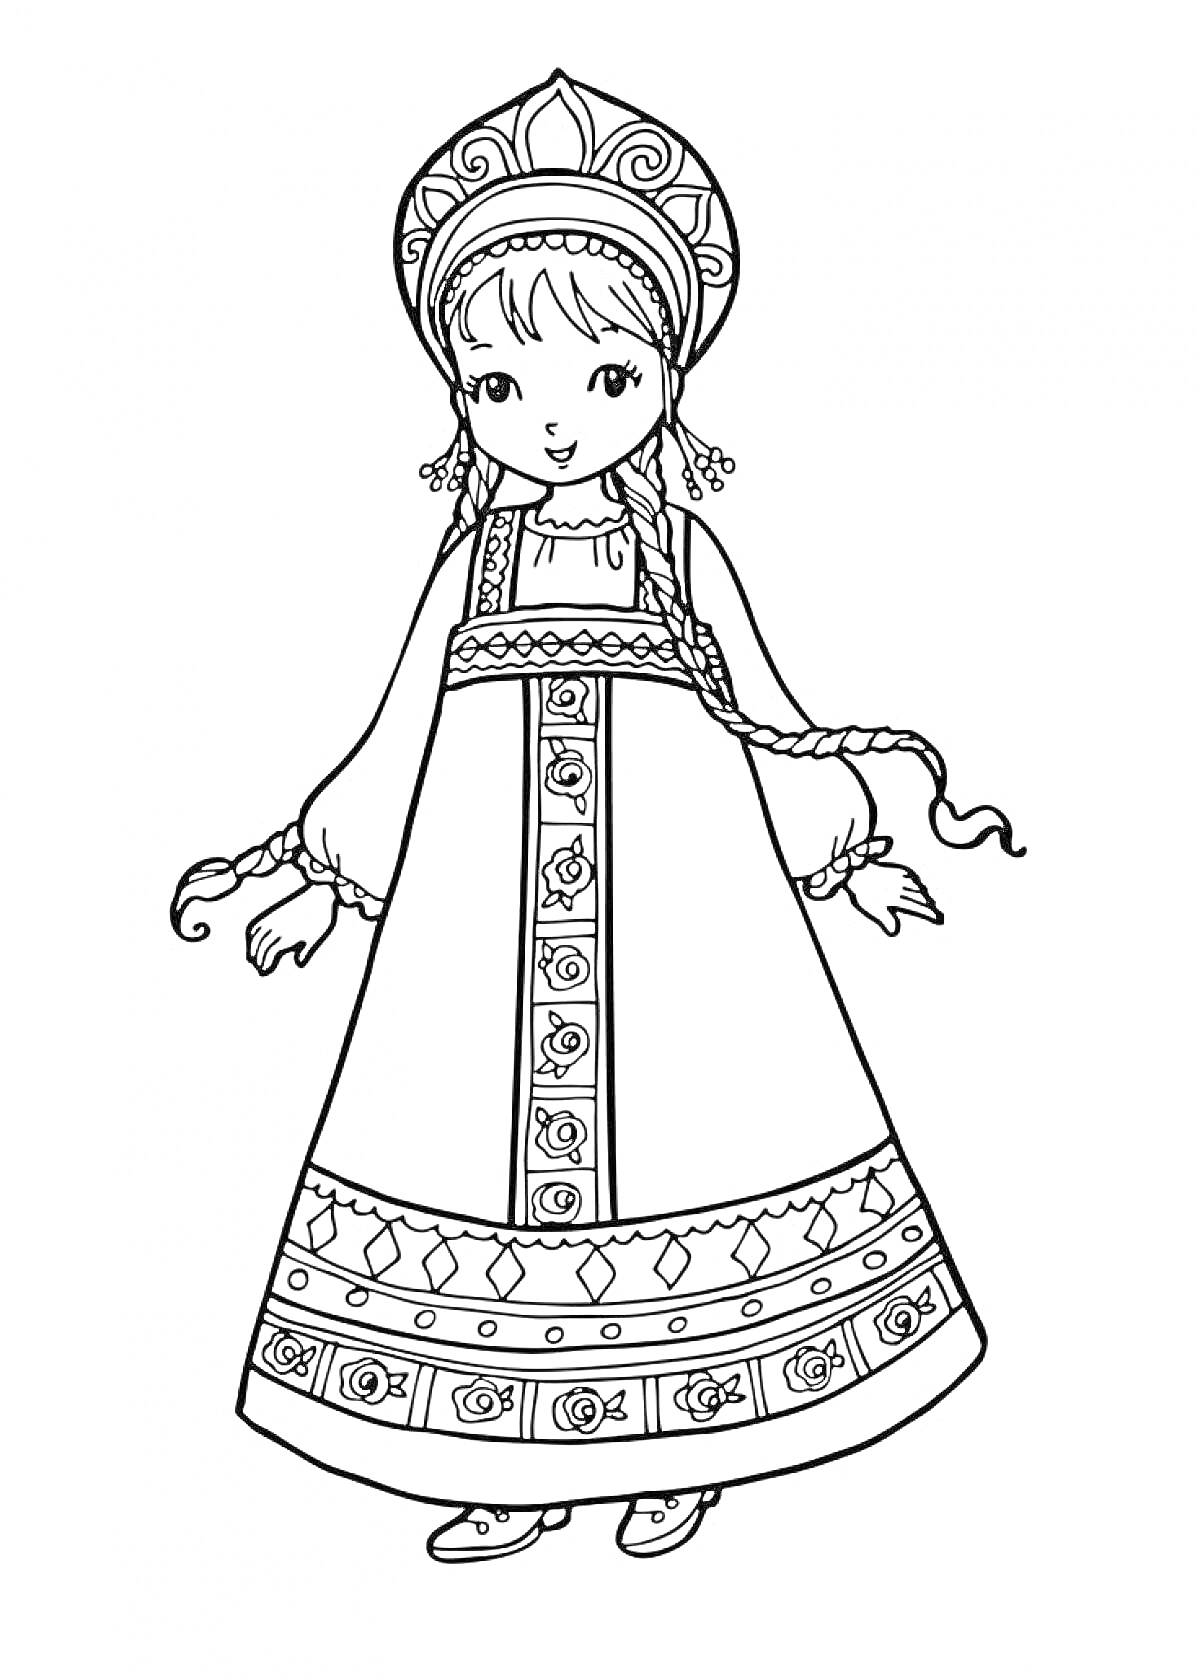 Раскраска Девочка в русском народном сарафане с кокошником, украшенным узорами, и с длинной косой